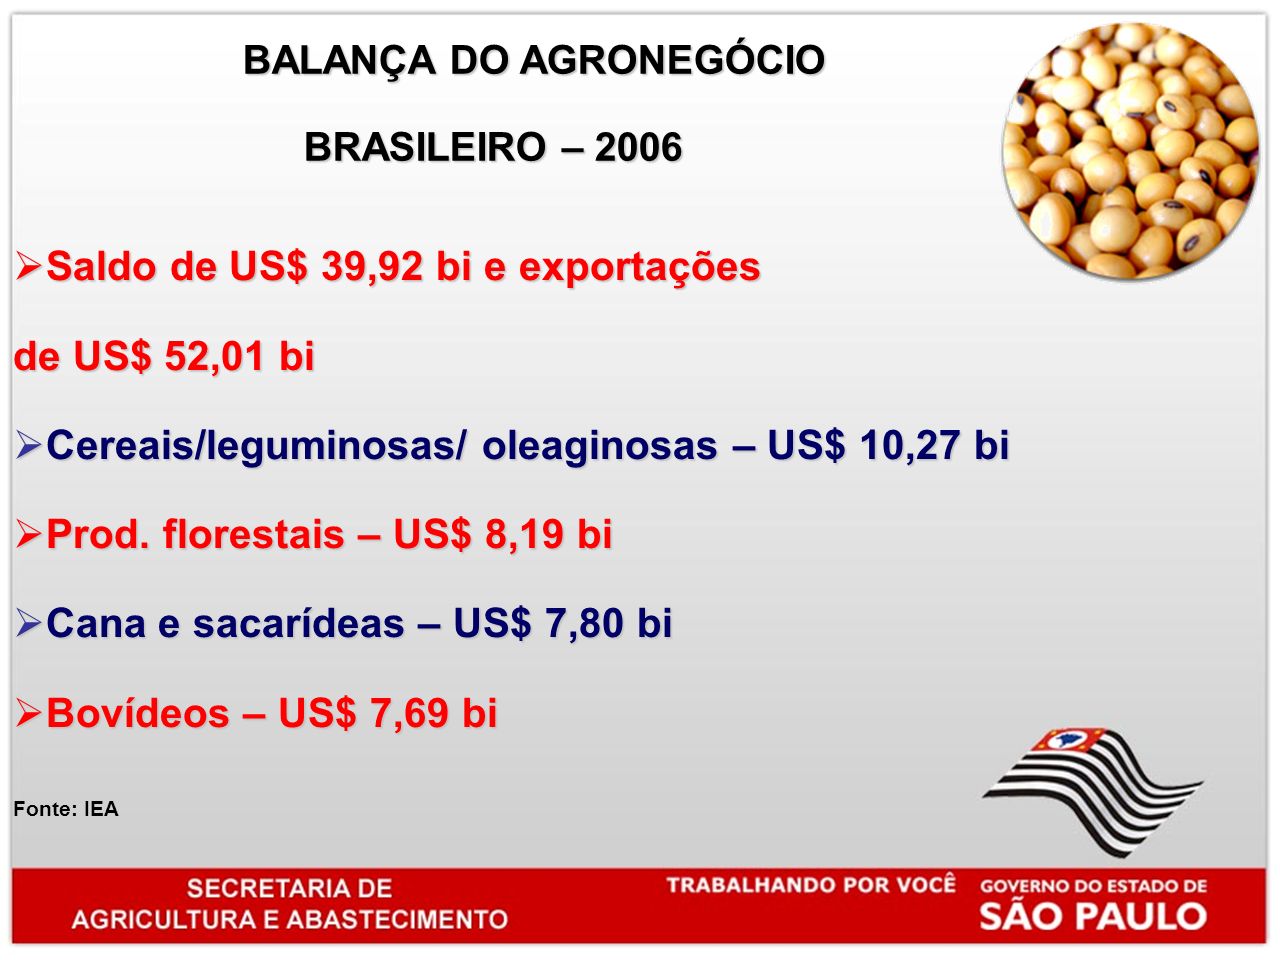 BALANÇA DO AGRONEGÓCIO BALANÇA DO AGRONEGÓCIO BRASILEIRO – 2006 BRASILEIRO – 2006 Saldo de US$ 39,92 bi e exportações Saldo de US$ 39,92 bi e exportações de US$ 52,01 bi Cereais/leguminosas/ oleaginosas – US$ 10,27 bi Cereais/leguminosas/ oleaginosas – US$ 10,27 bi Prod.